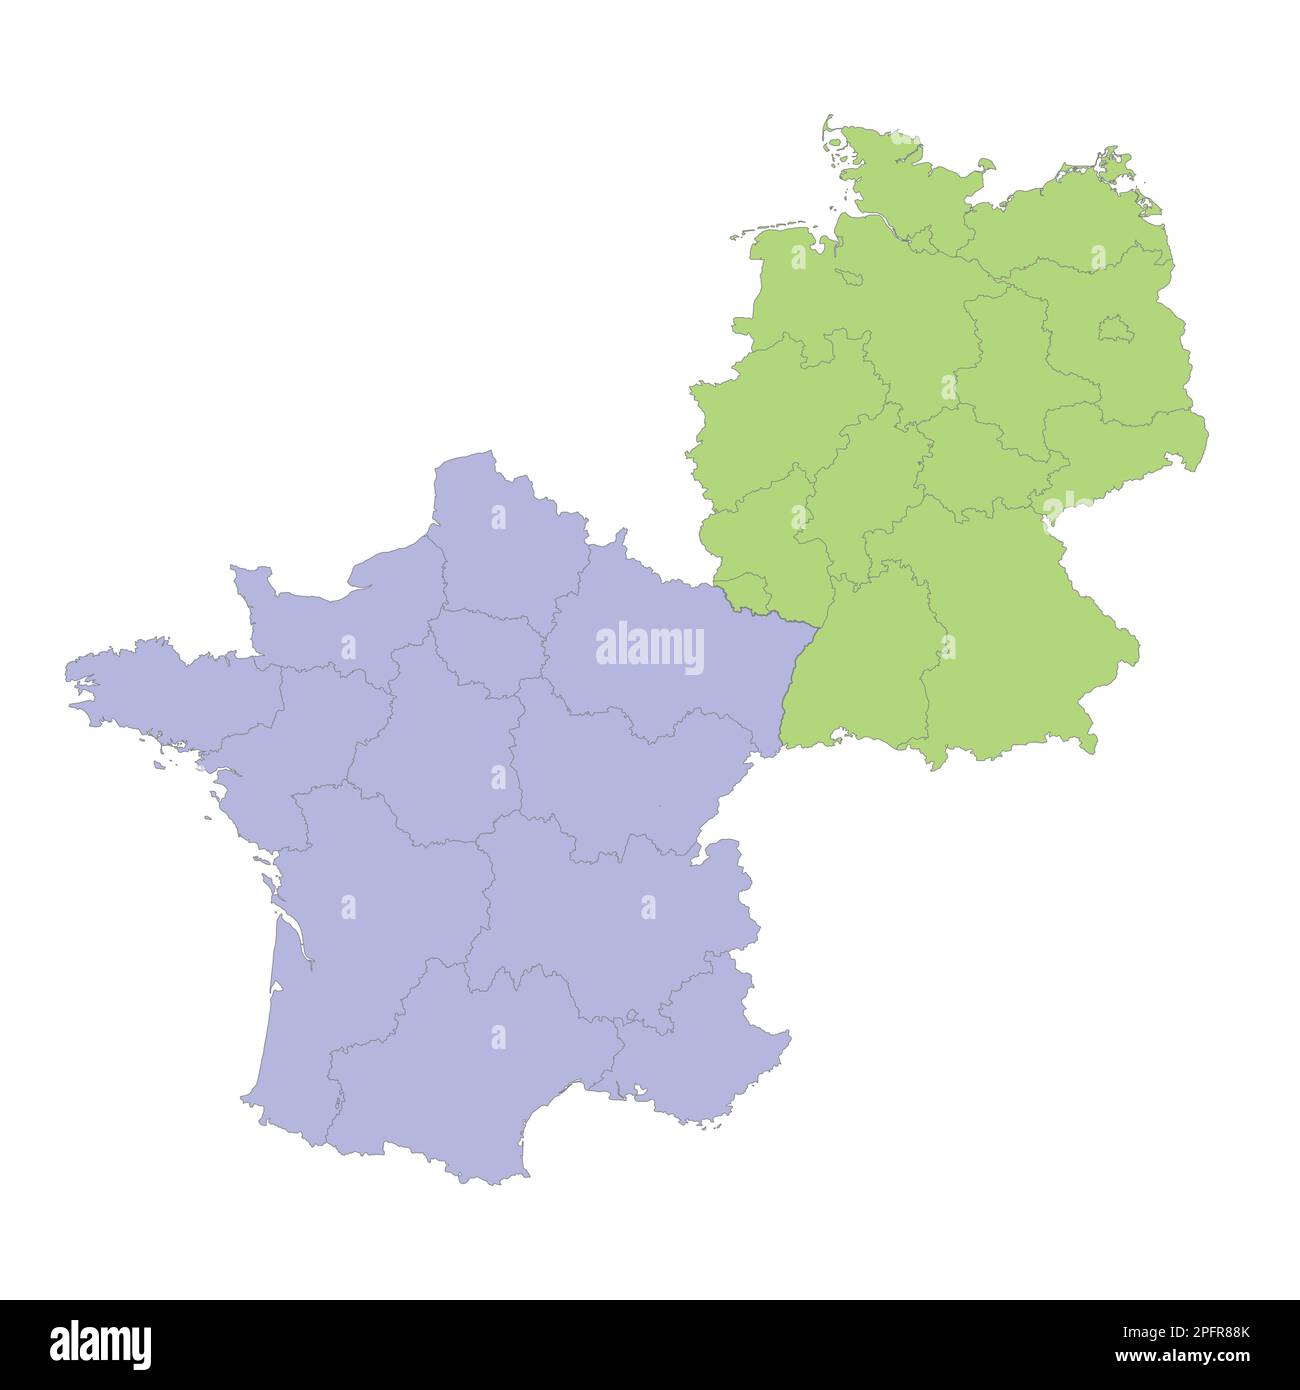 Mappa politica di alta qualità della Germania e della Francia con i confini delle regioni o delle province. Illustrazione vettoriale Illustrazione Vettoriale